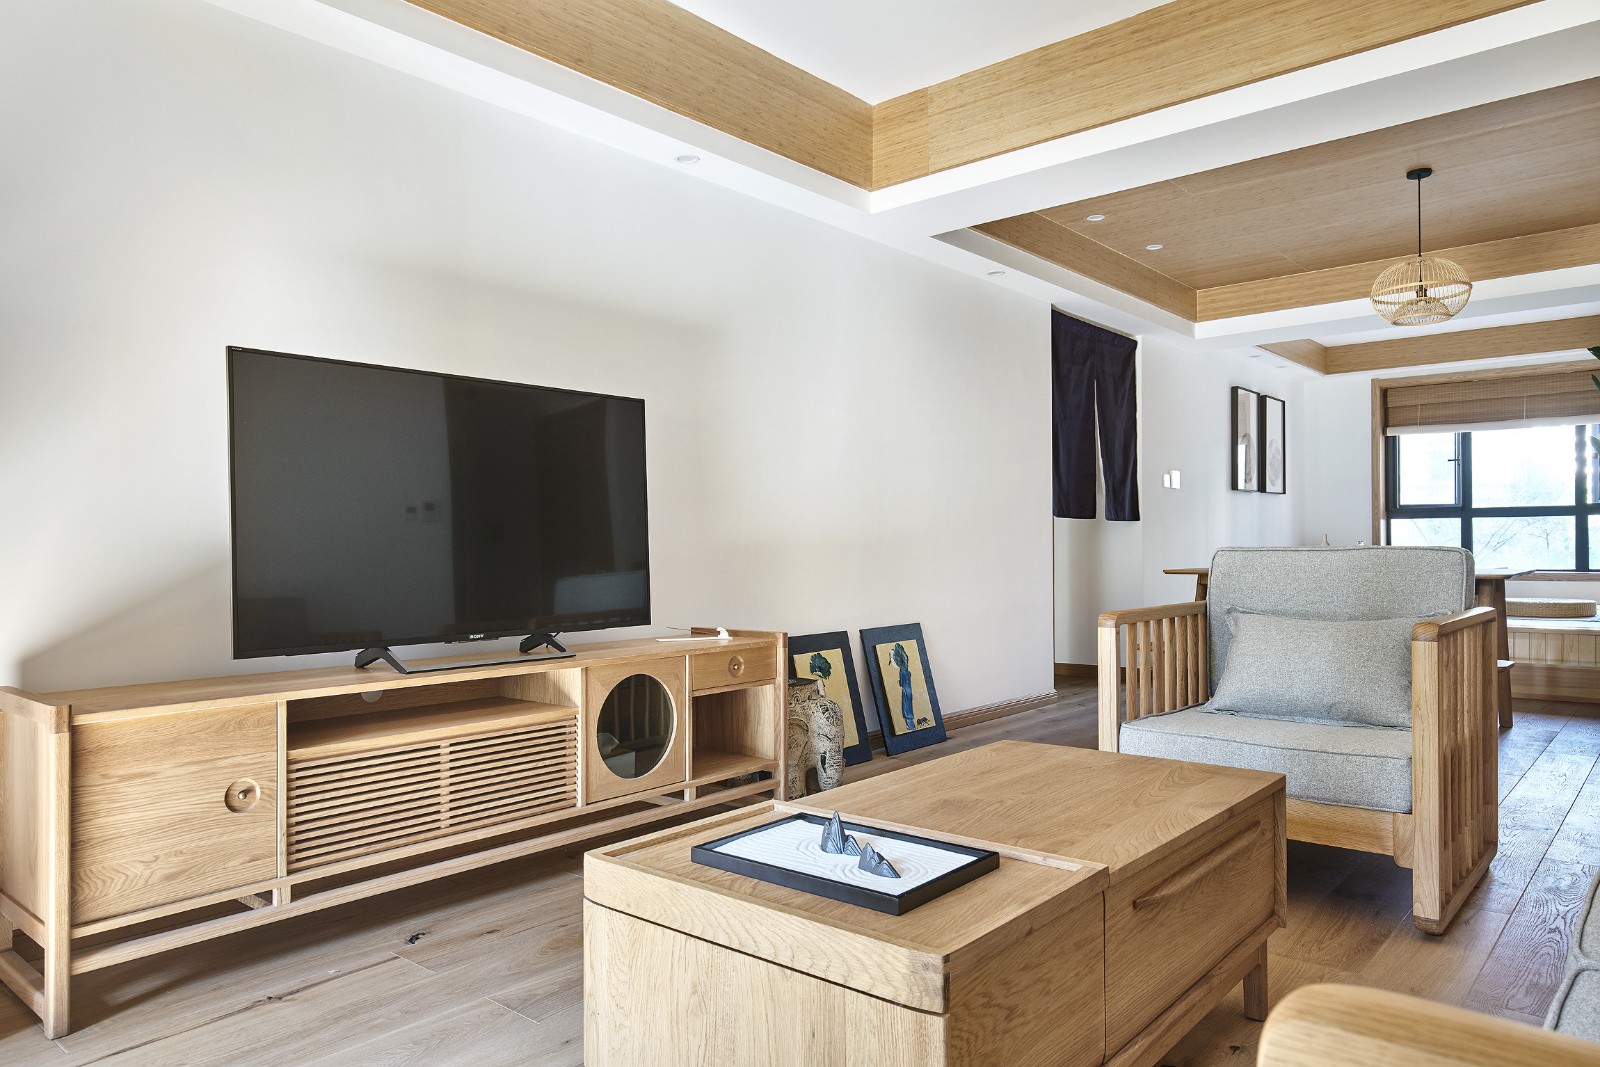 日式簡約原木風格家裝設計室內裝修效果圖-客廳